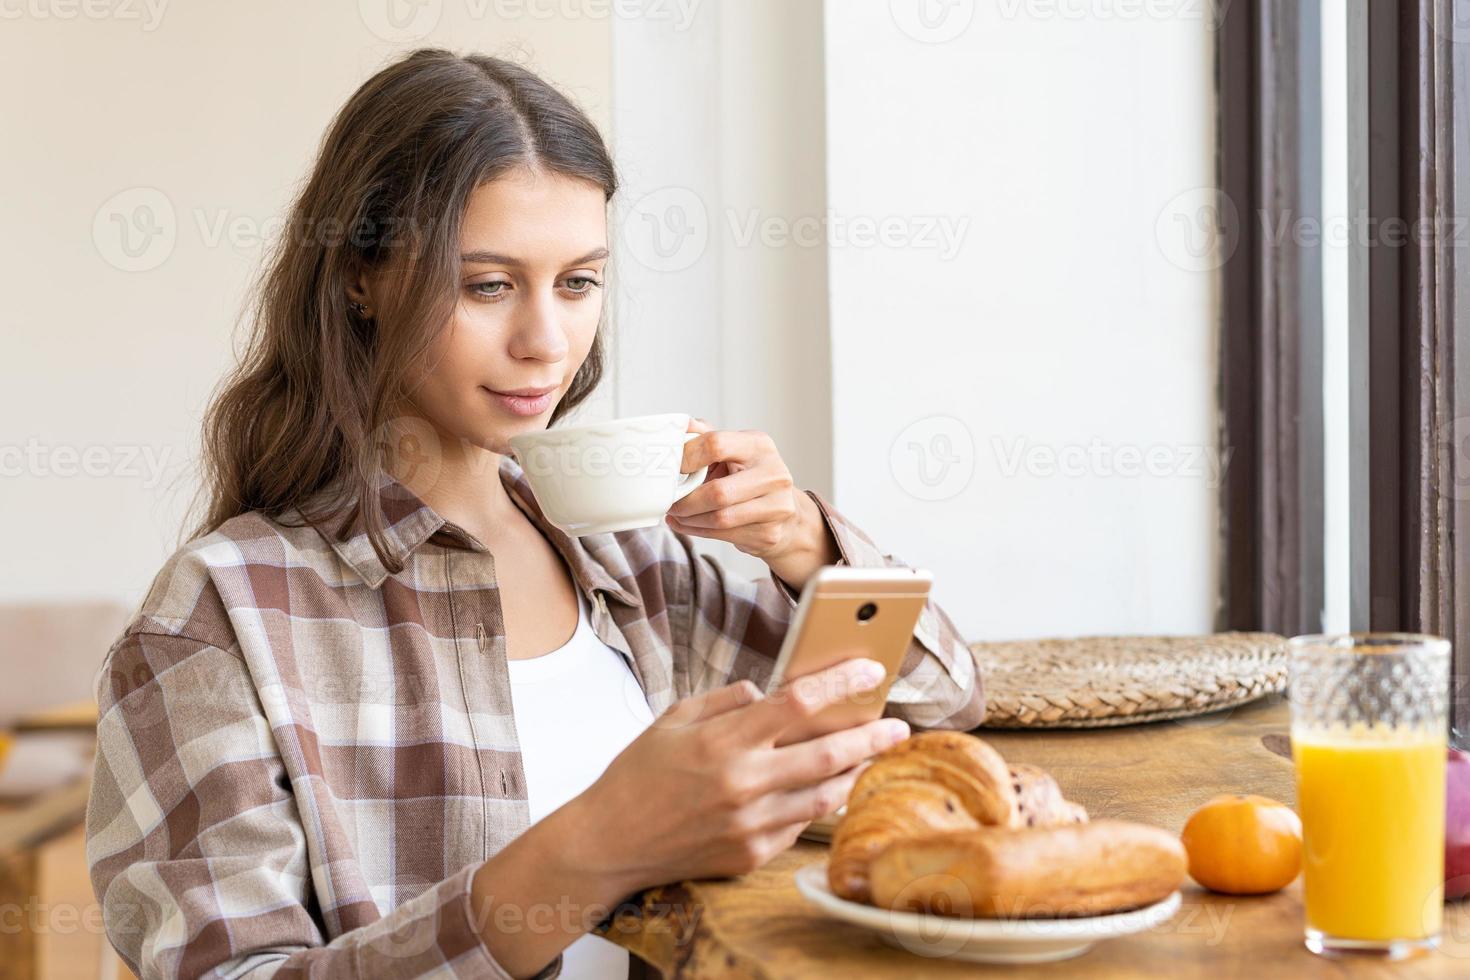 vrouw die sociale netwerken bekijkt met behulp van mobiel, genietend van een gezond ontbijt. foto